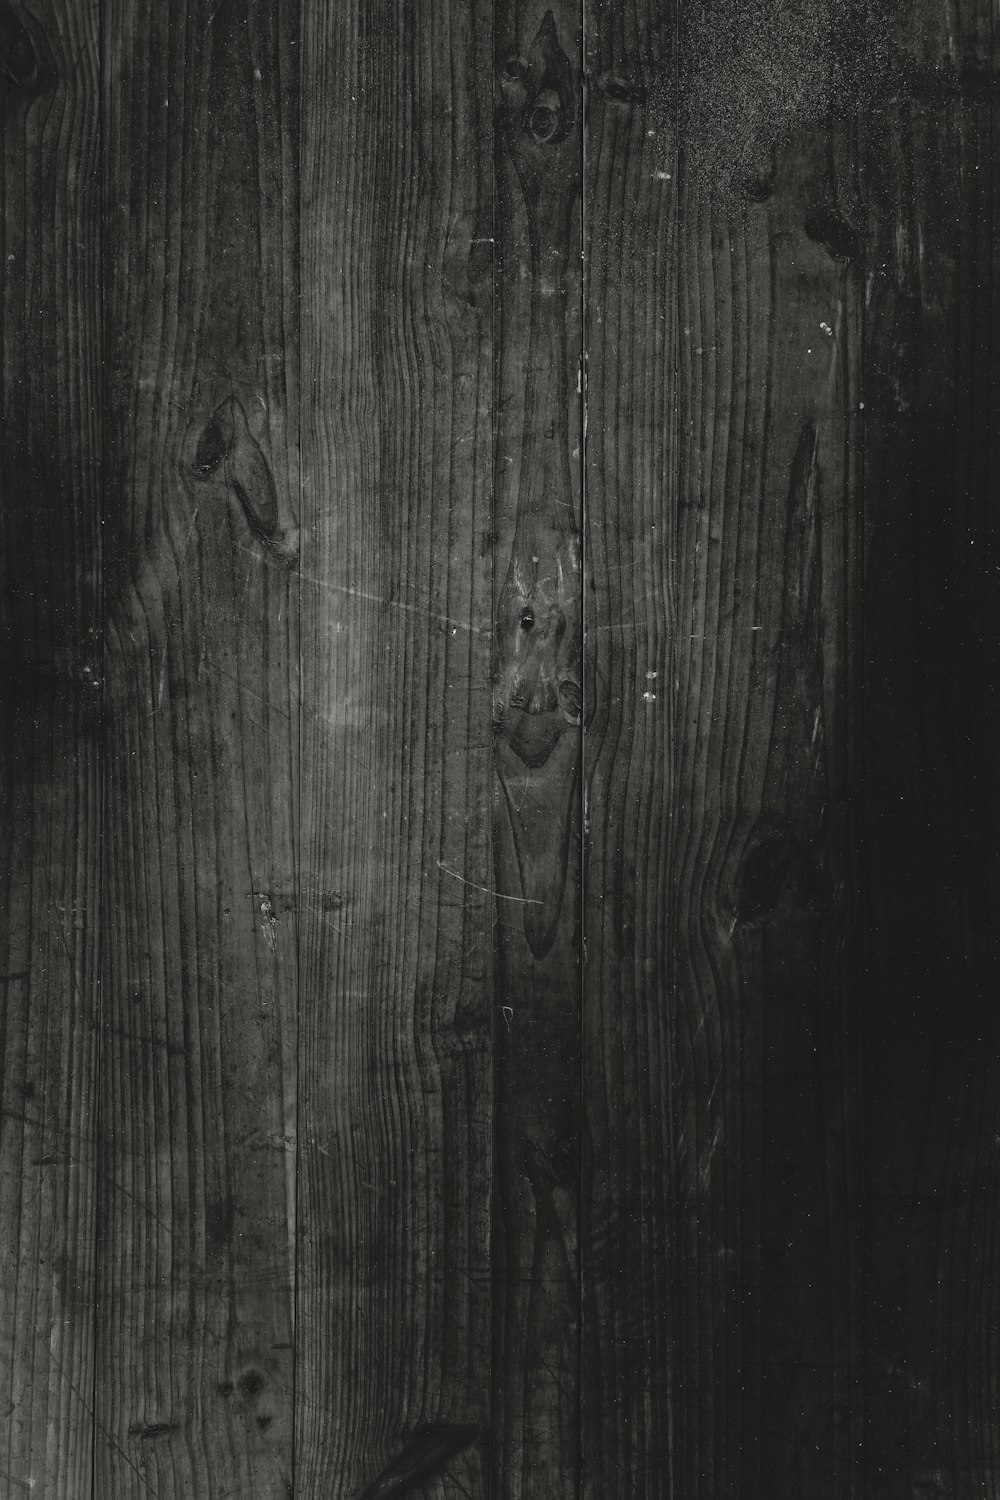 Gỗ đen là sự lựa chọn hoàn hảo cho những ai thích phong cách độc đáo và sang trọng. Với những hình ảnh gỗ đen đẹp, bạn sẽ cảm nhận được sự trang nhã và tinh tế trong từng chi tiết. Hãy khám phá ngay những bức ảnh gỗ đen để tạo điểm nhấn cho không gian của bạn.